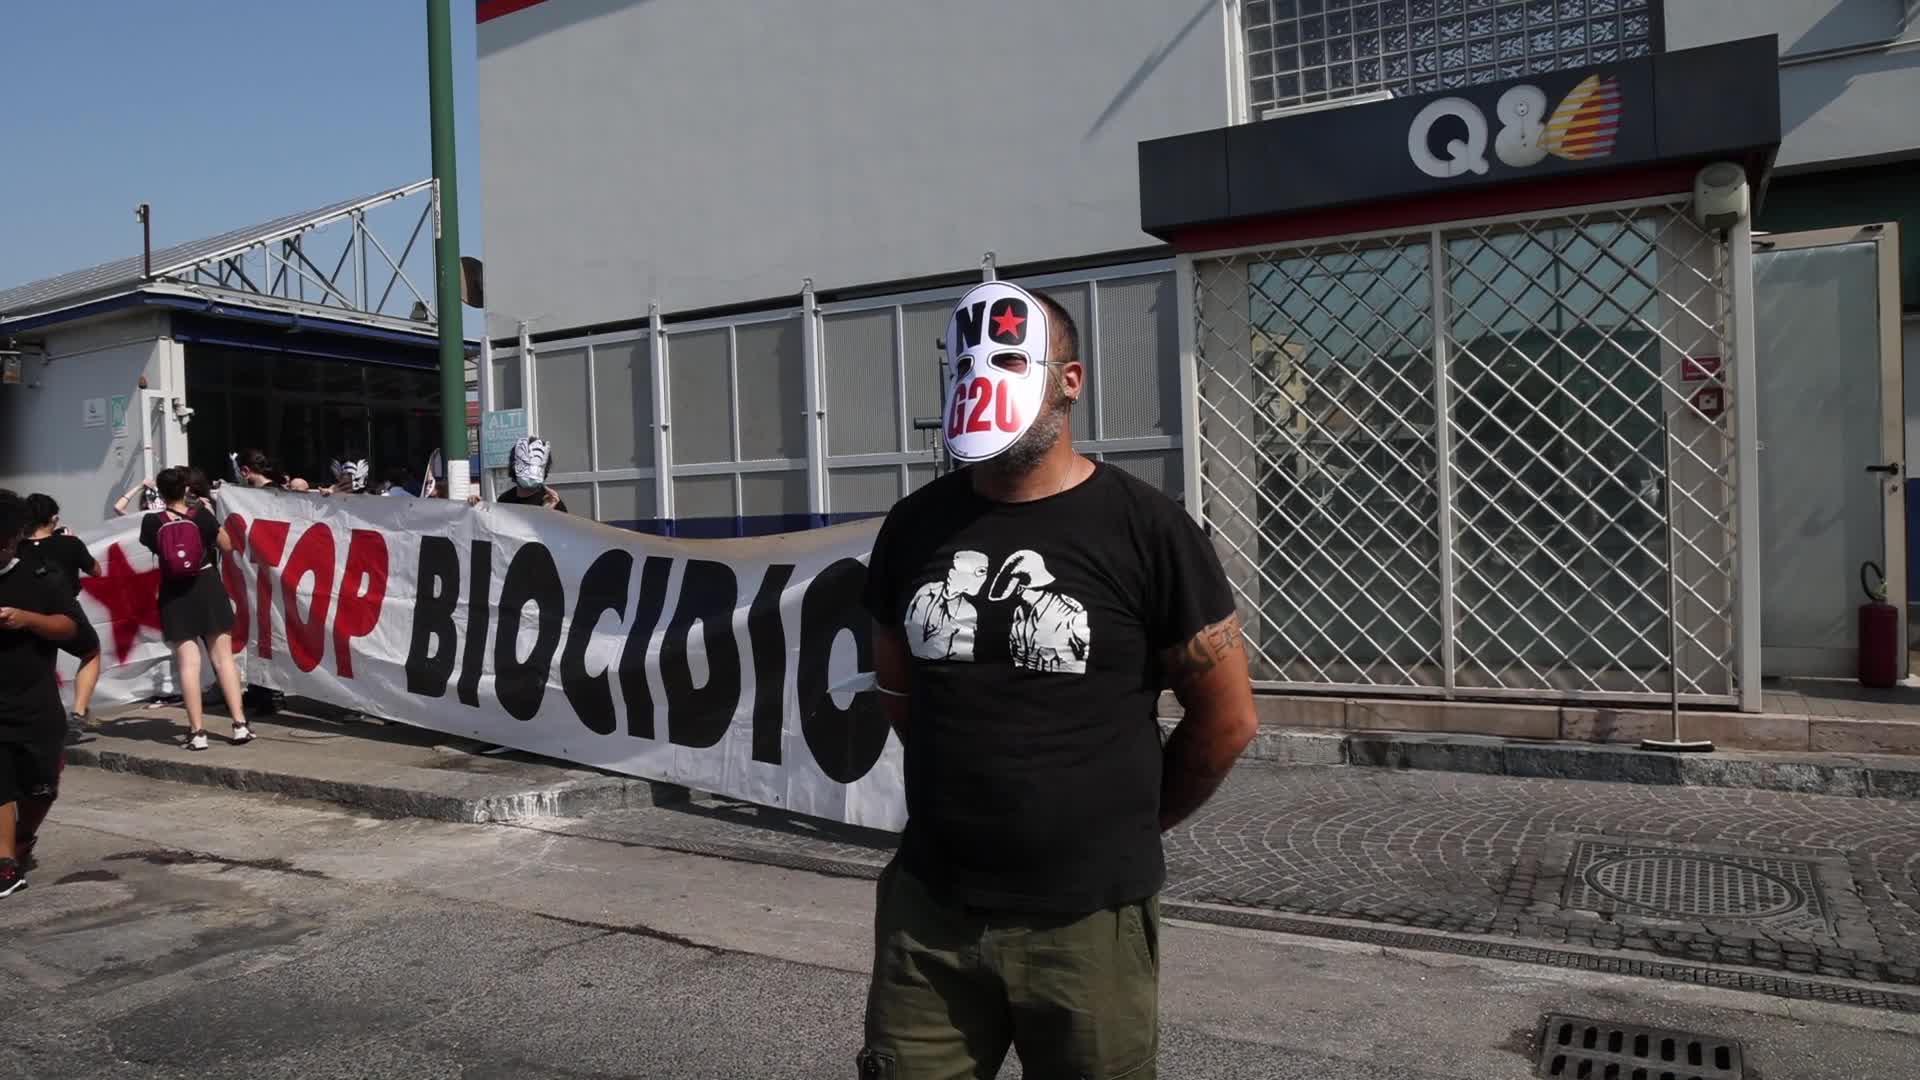 G20 Ambiente, azione di protesta contro la Q8 a Napoli - VIDEO